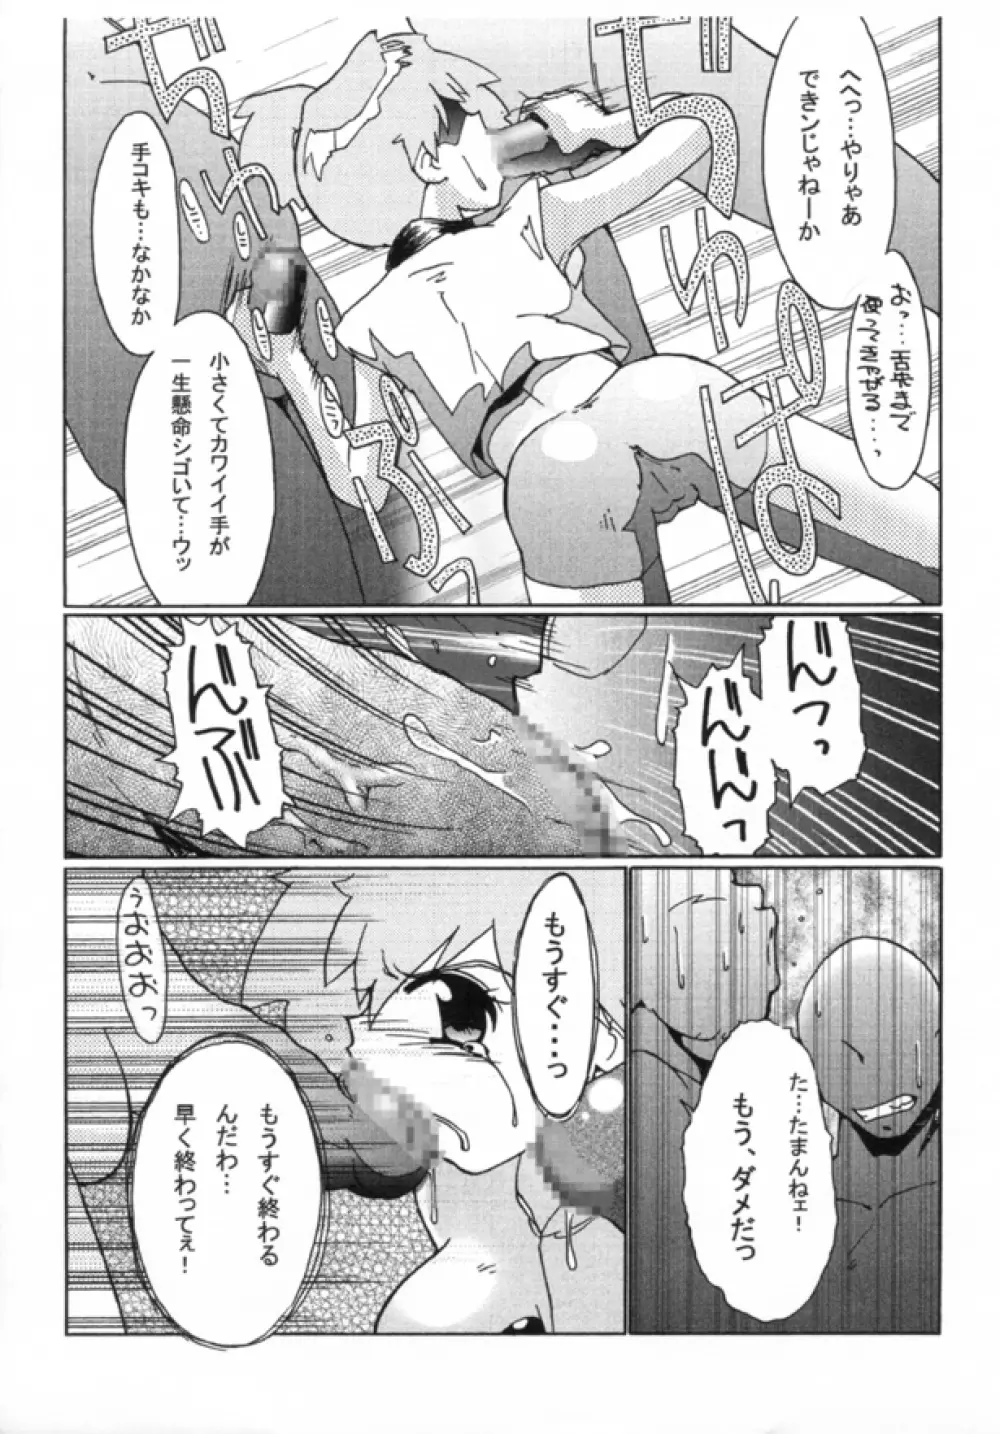 KASUMIX XPLOSION Kasumi Comic part5 45ページ